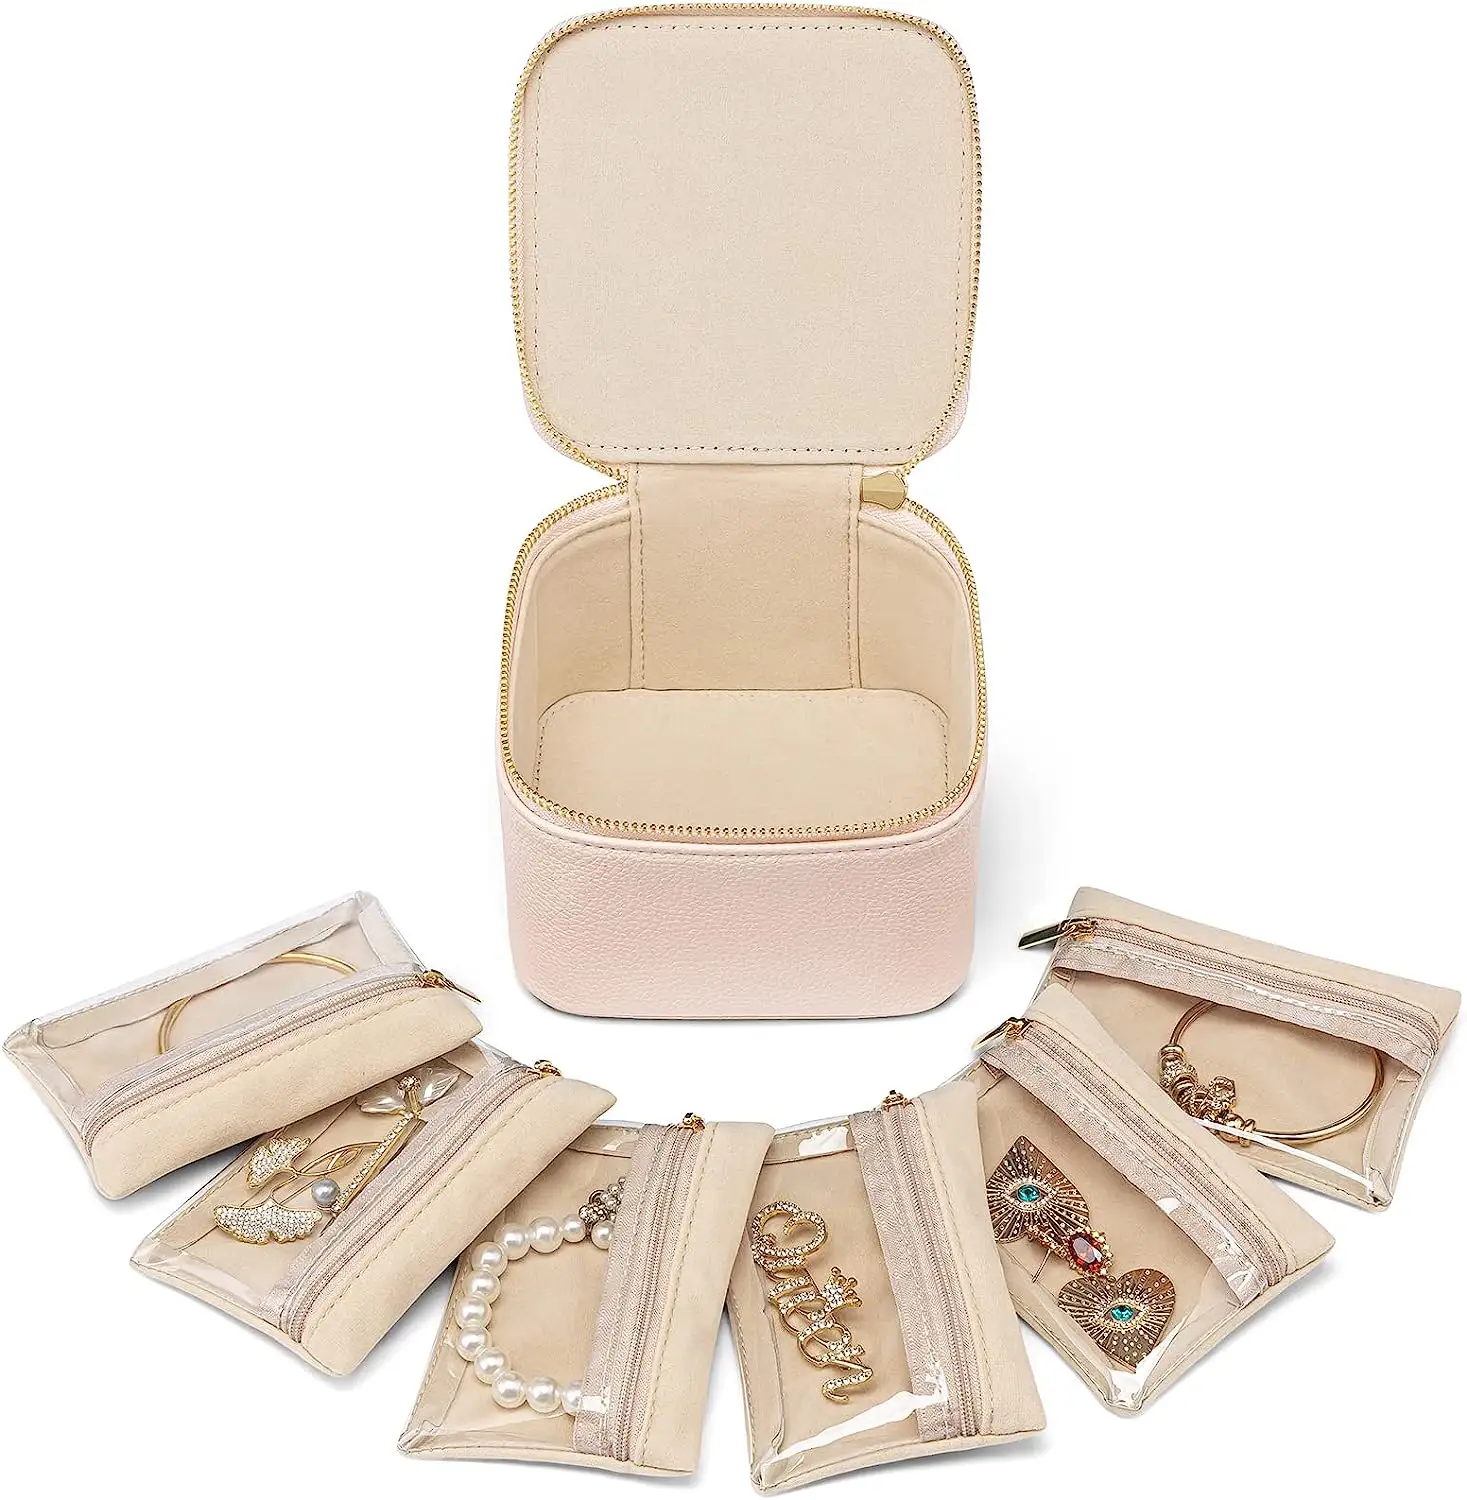 Organizador de caja de embalaje de joyería de cuero de viaje para collar, pendientes, soporte de joyería personalizado